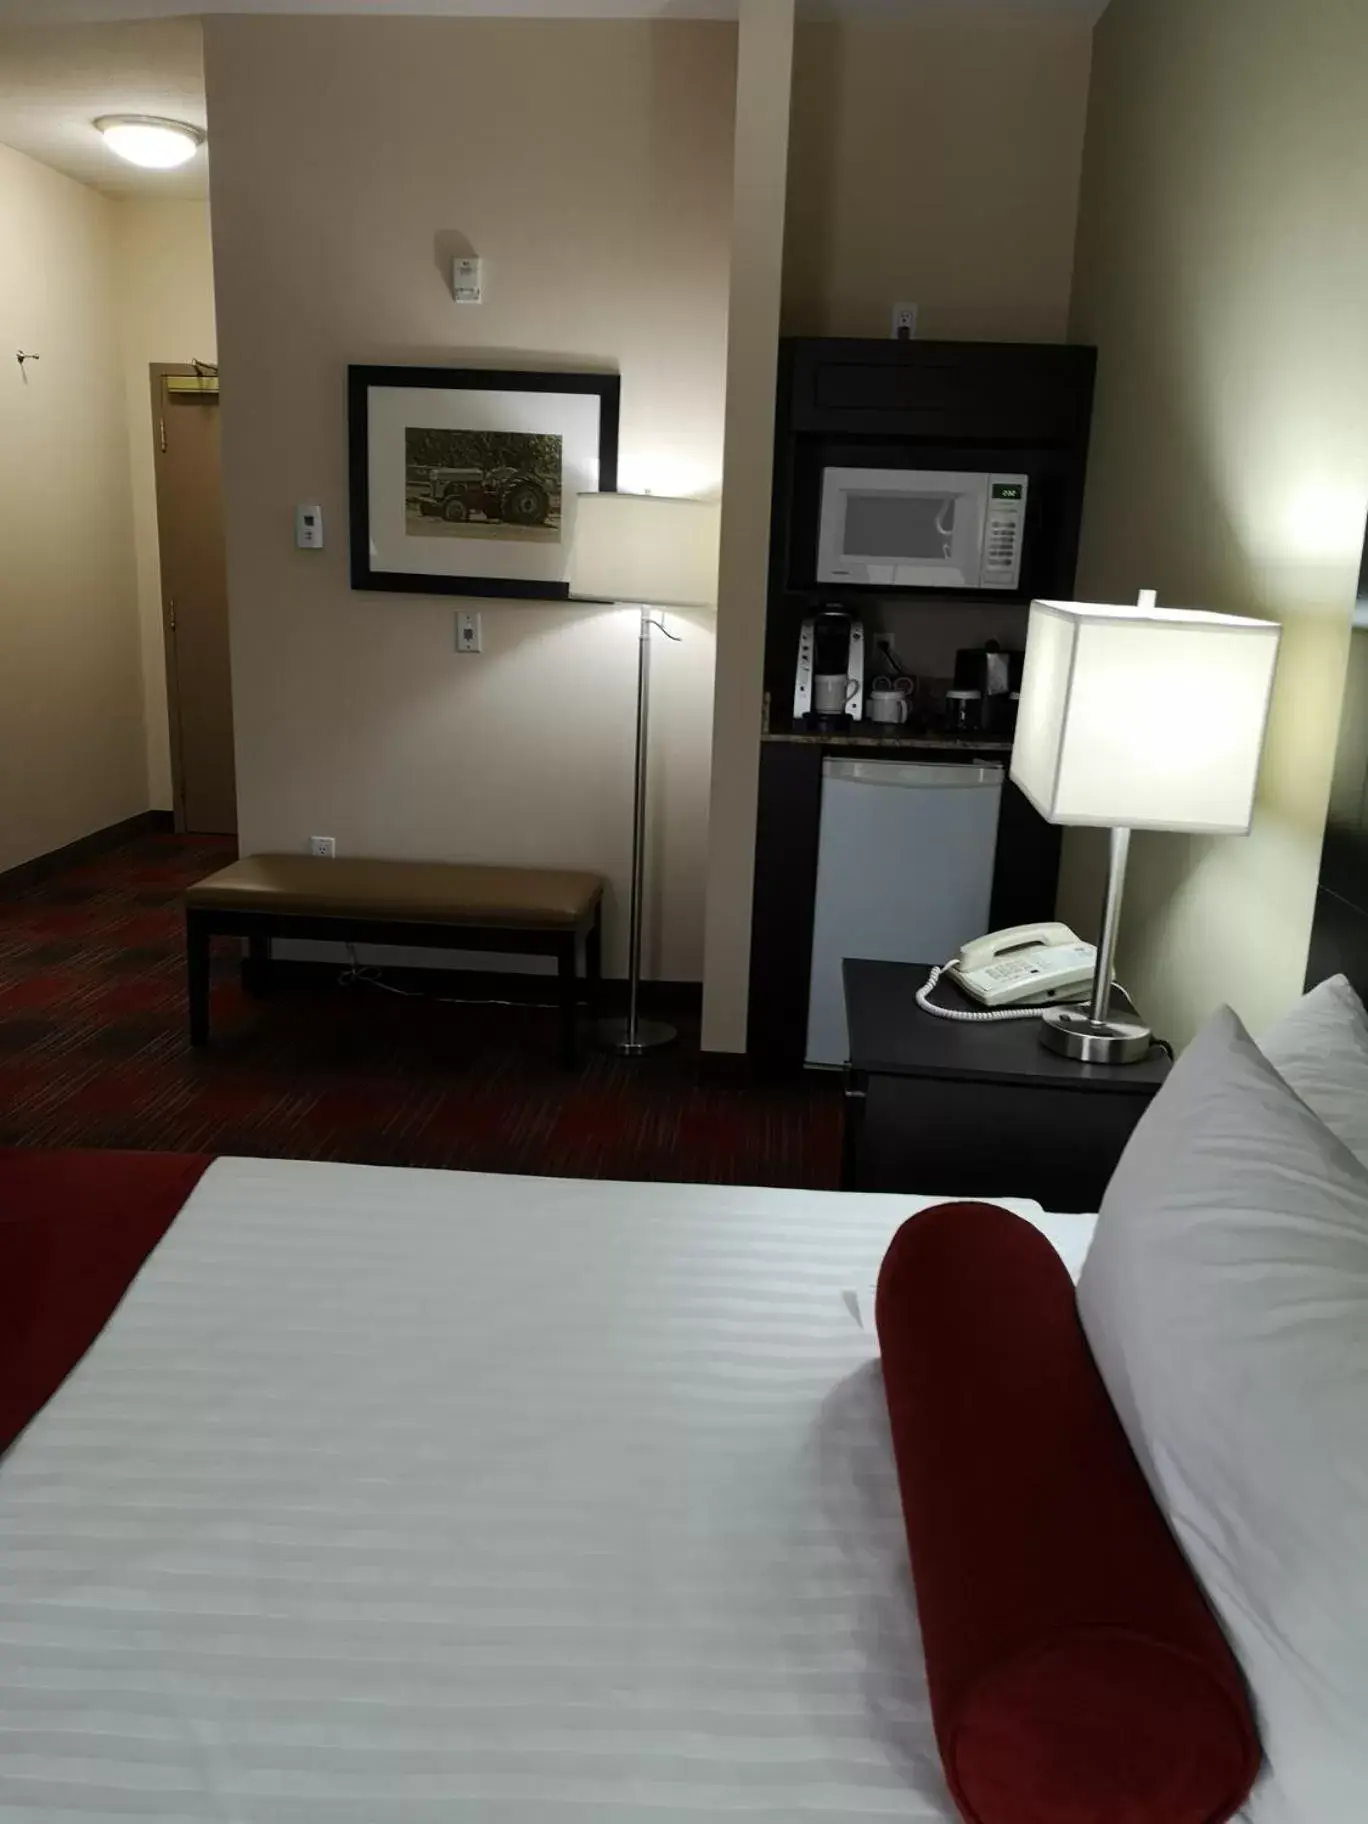 Bedroom, TV/Entertainment Center in Best Western Plus Red Deer Inn & Suite